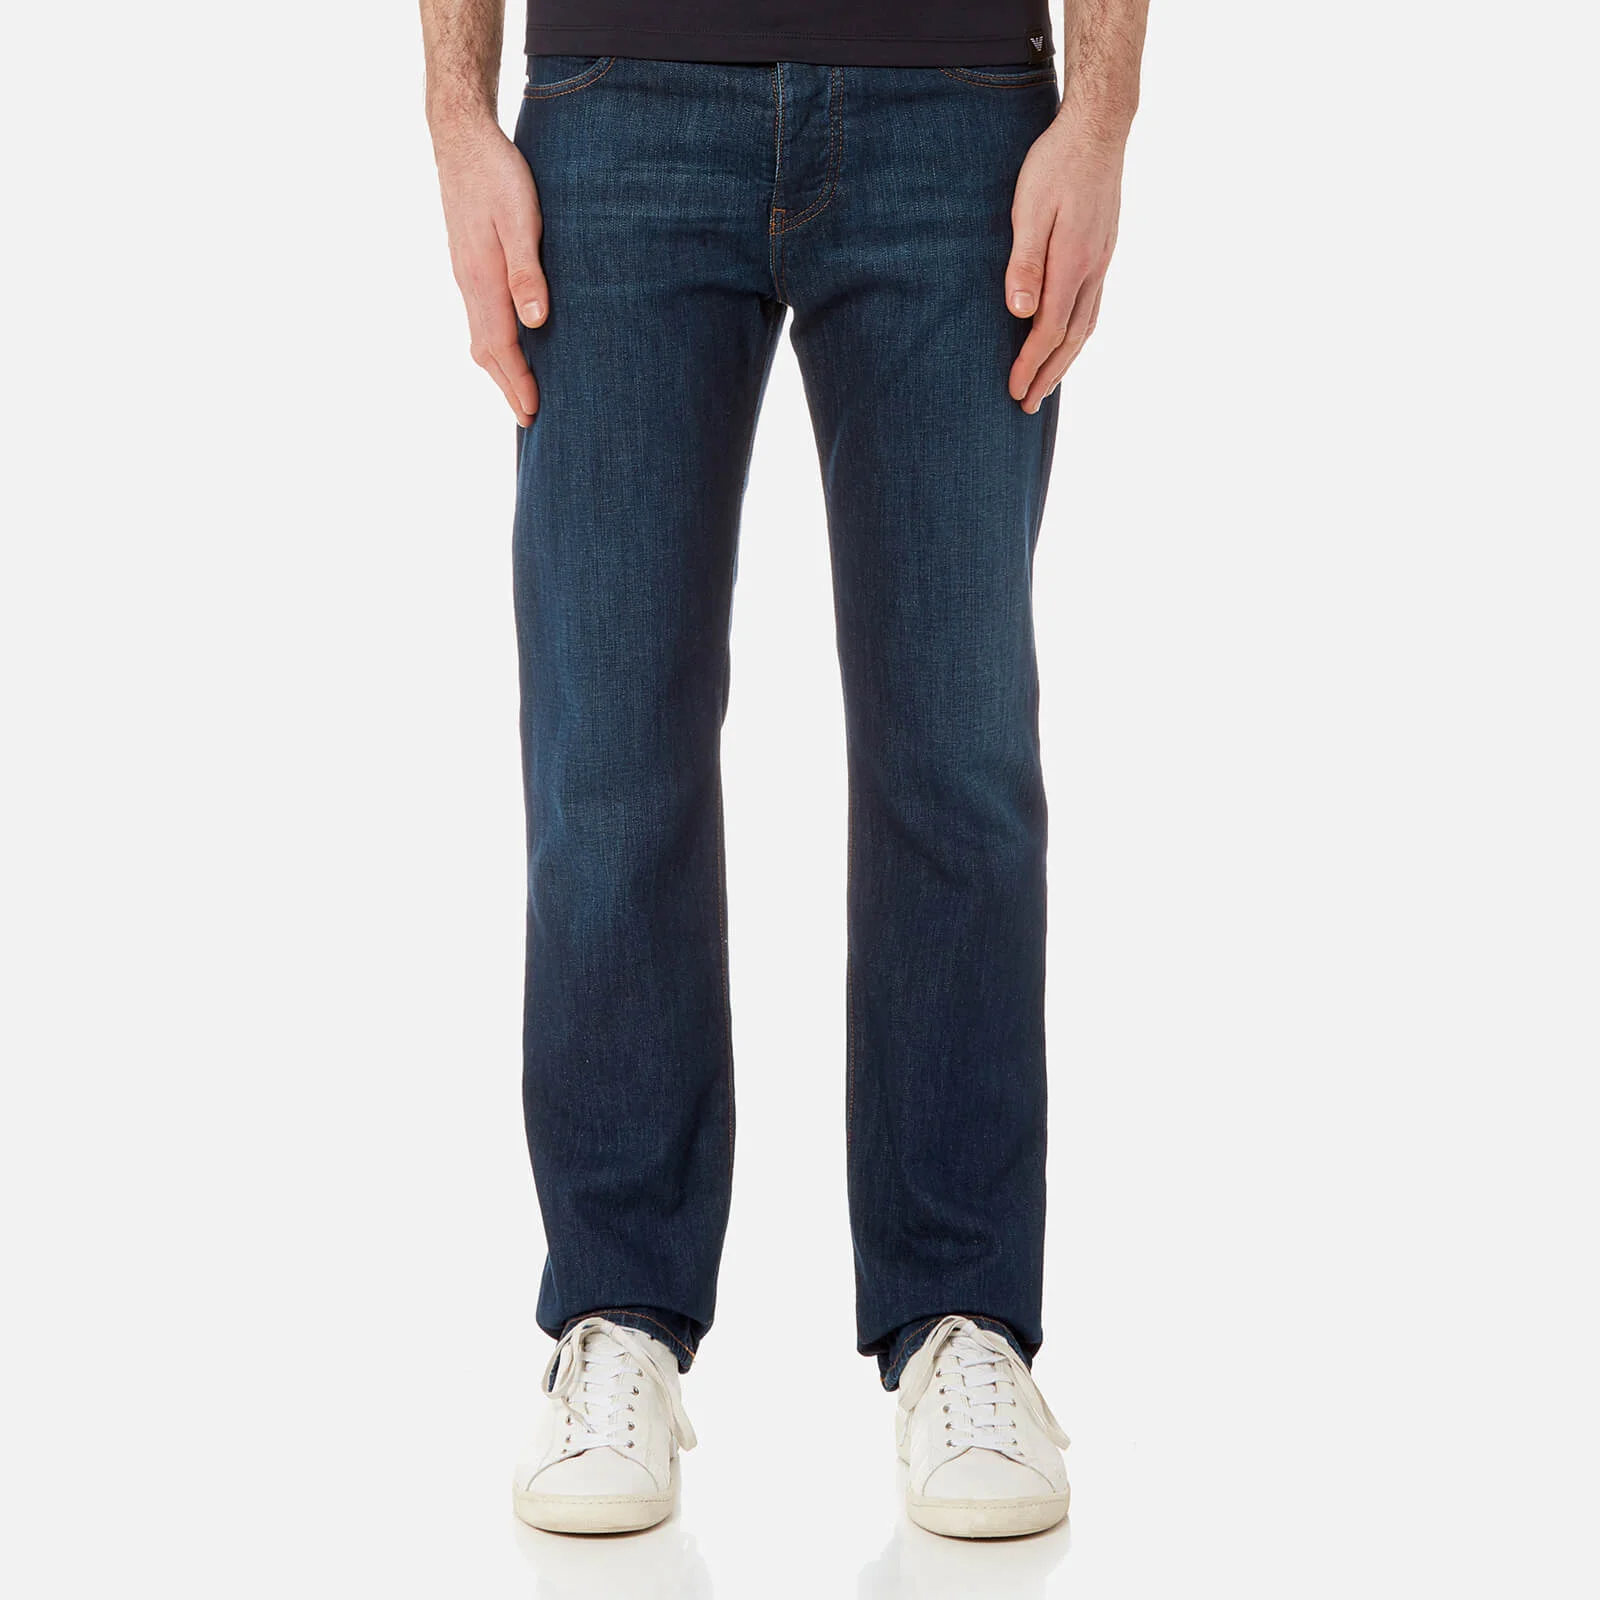 Emporio Armani Men's J21 5 Pocket Regular Fit Jeans - Blu Image 1